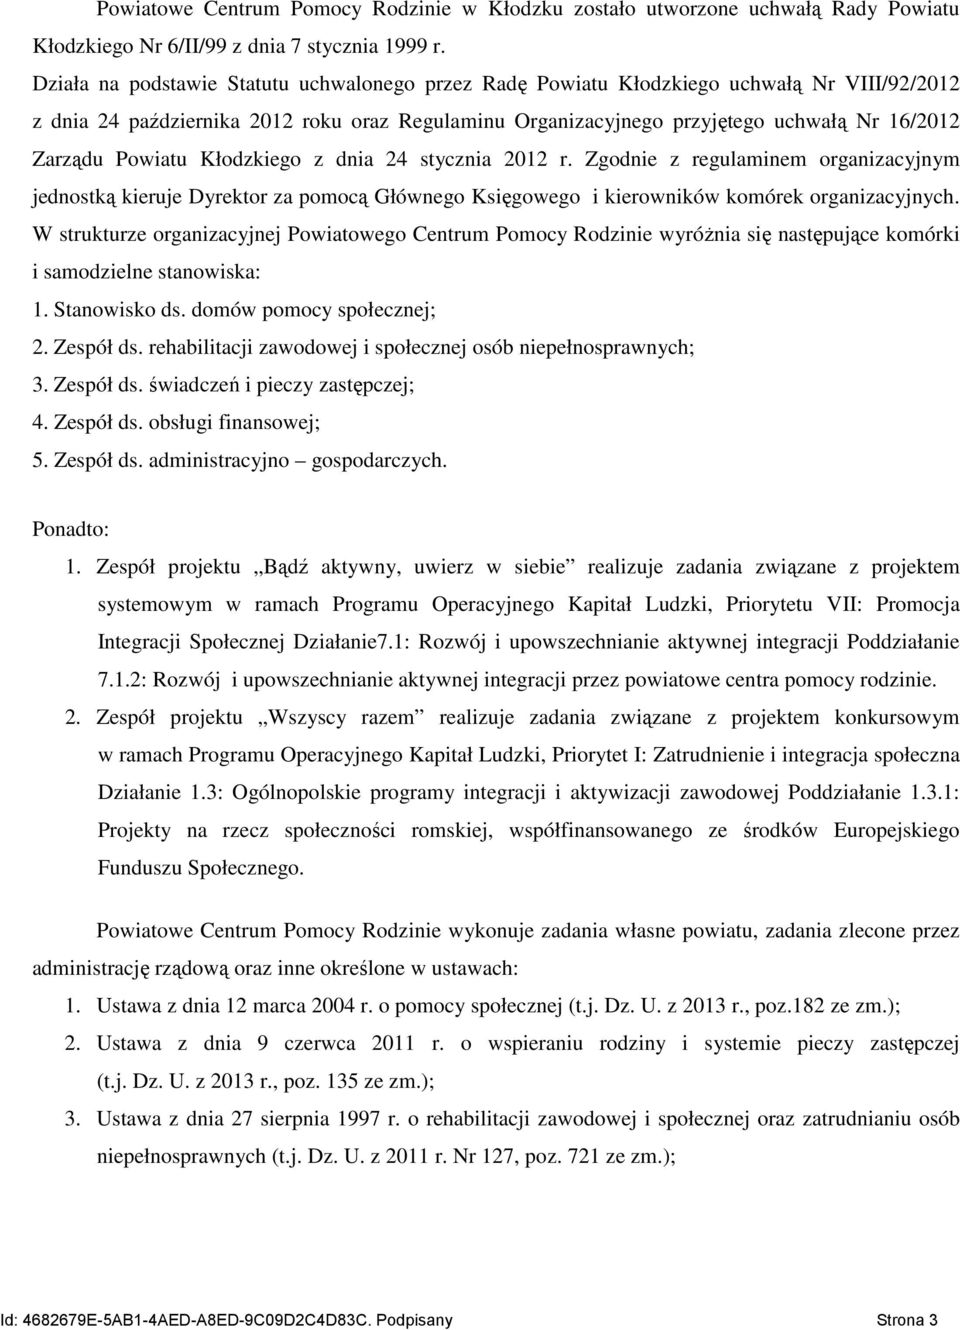 Powiatu Kłodzkiego z dnia 24 stycznia 2012 r. Zgodnie z regulaminem organizacyjnym jednostką kieruje Dyrektor za pomocą Głównego Księgowego i kierowników komórek organizacyjnych.